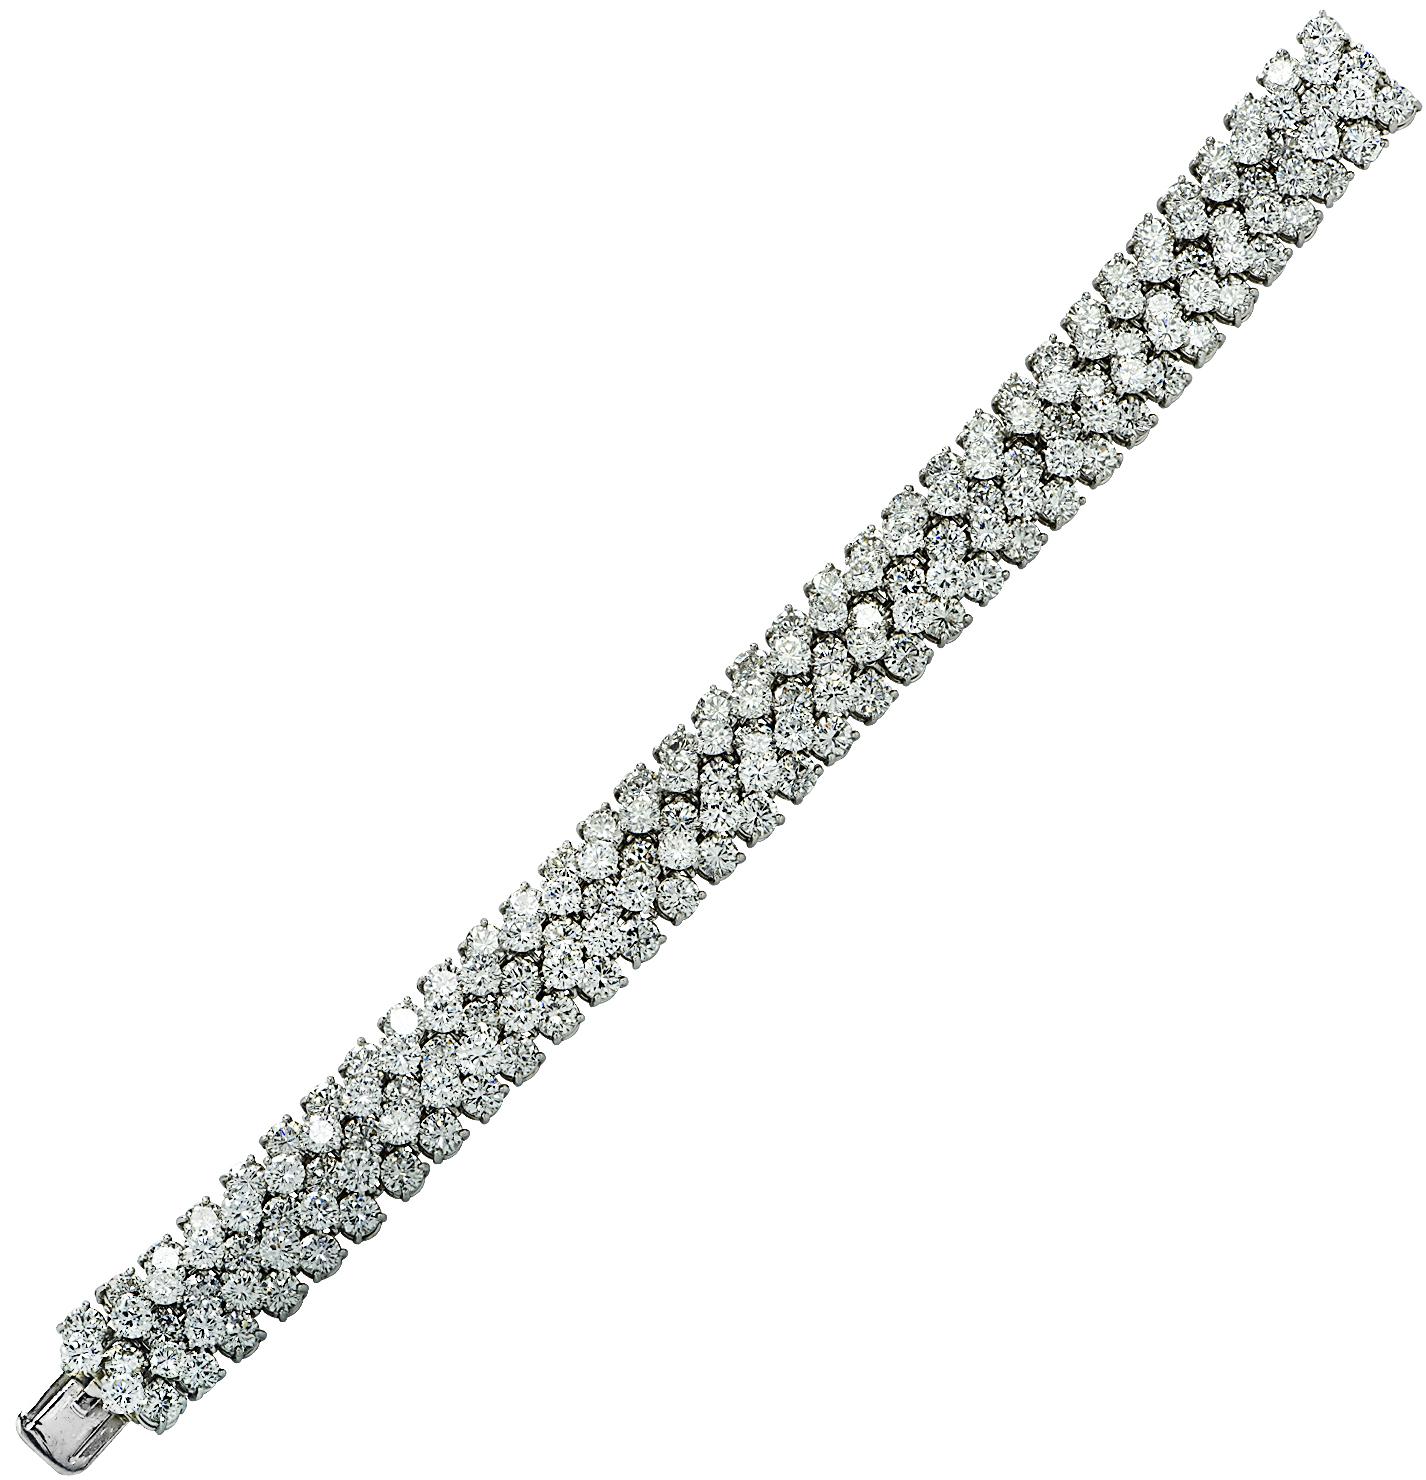 Spectaculaire bracelet bangle en diamants Oscar Heyman Circa 1970, finement réalisé à la main en platine, comportant 170 diamants ronds de taille brillant pesant environ 30 carats au total, couleur E, pureté VS. Des couches dynamiques de diamants,